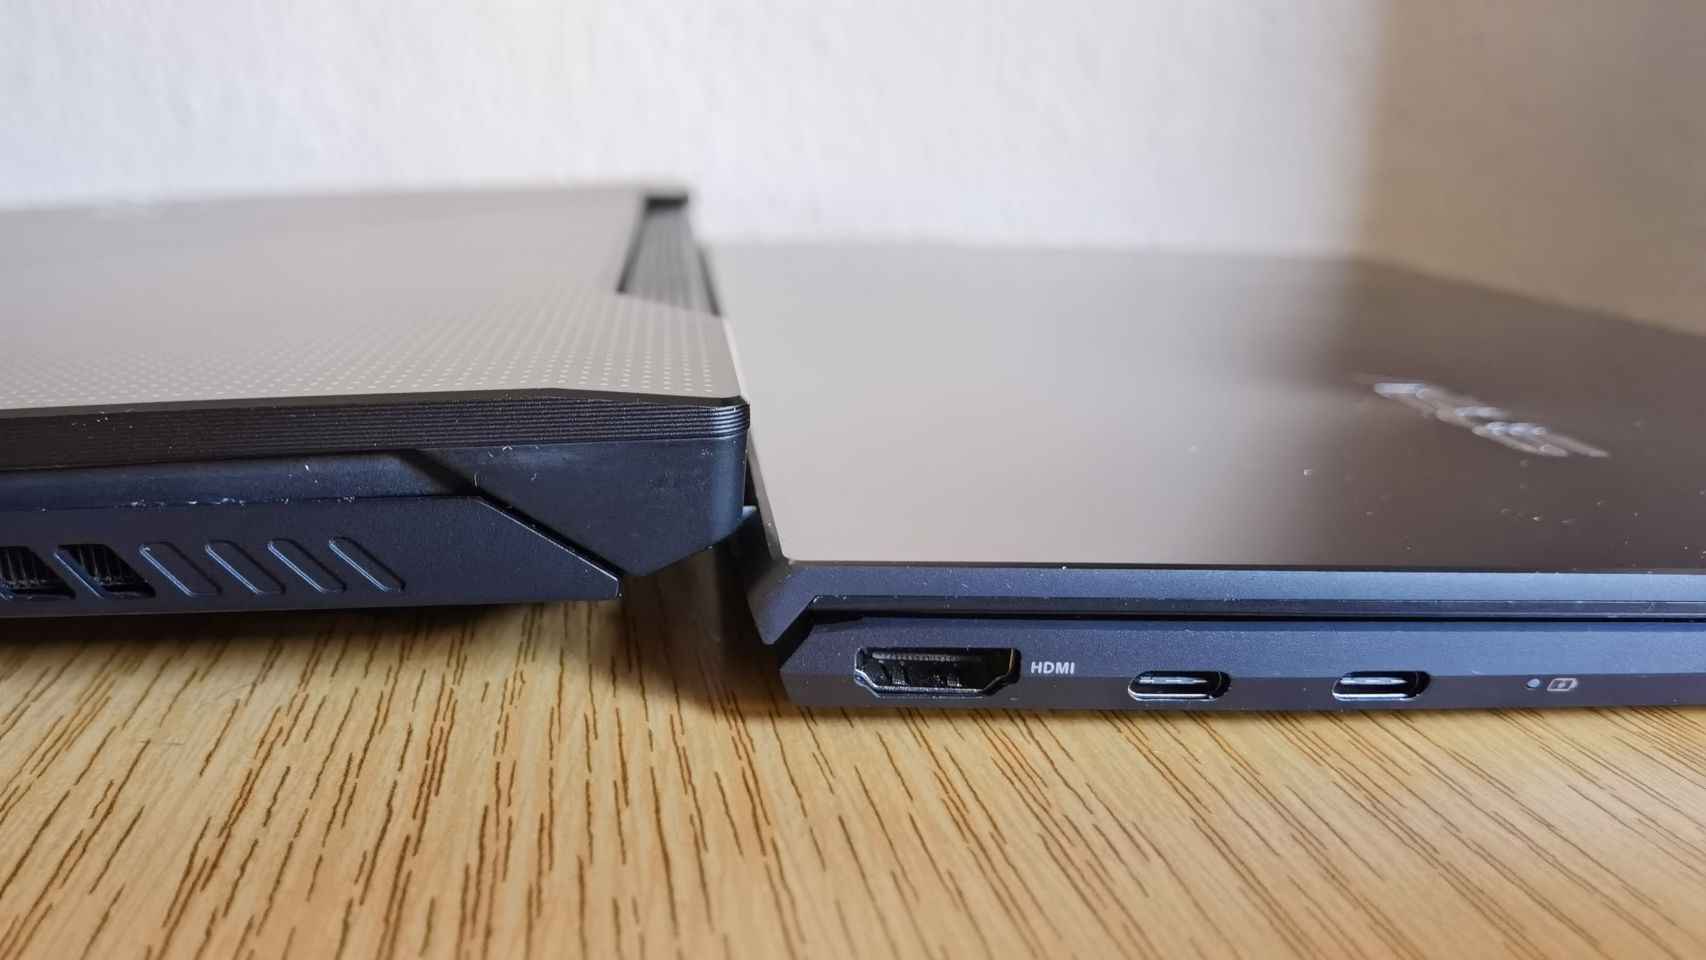 Comparar el Zephyrus Duo con el ZenBook 13 vale para hacernos una idea de su tamaño